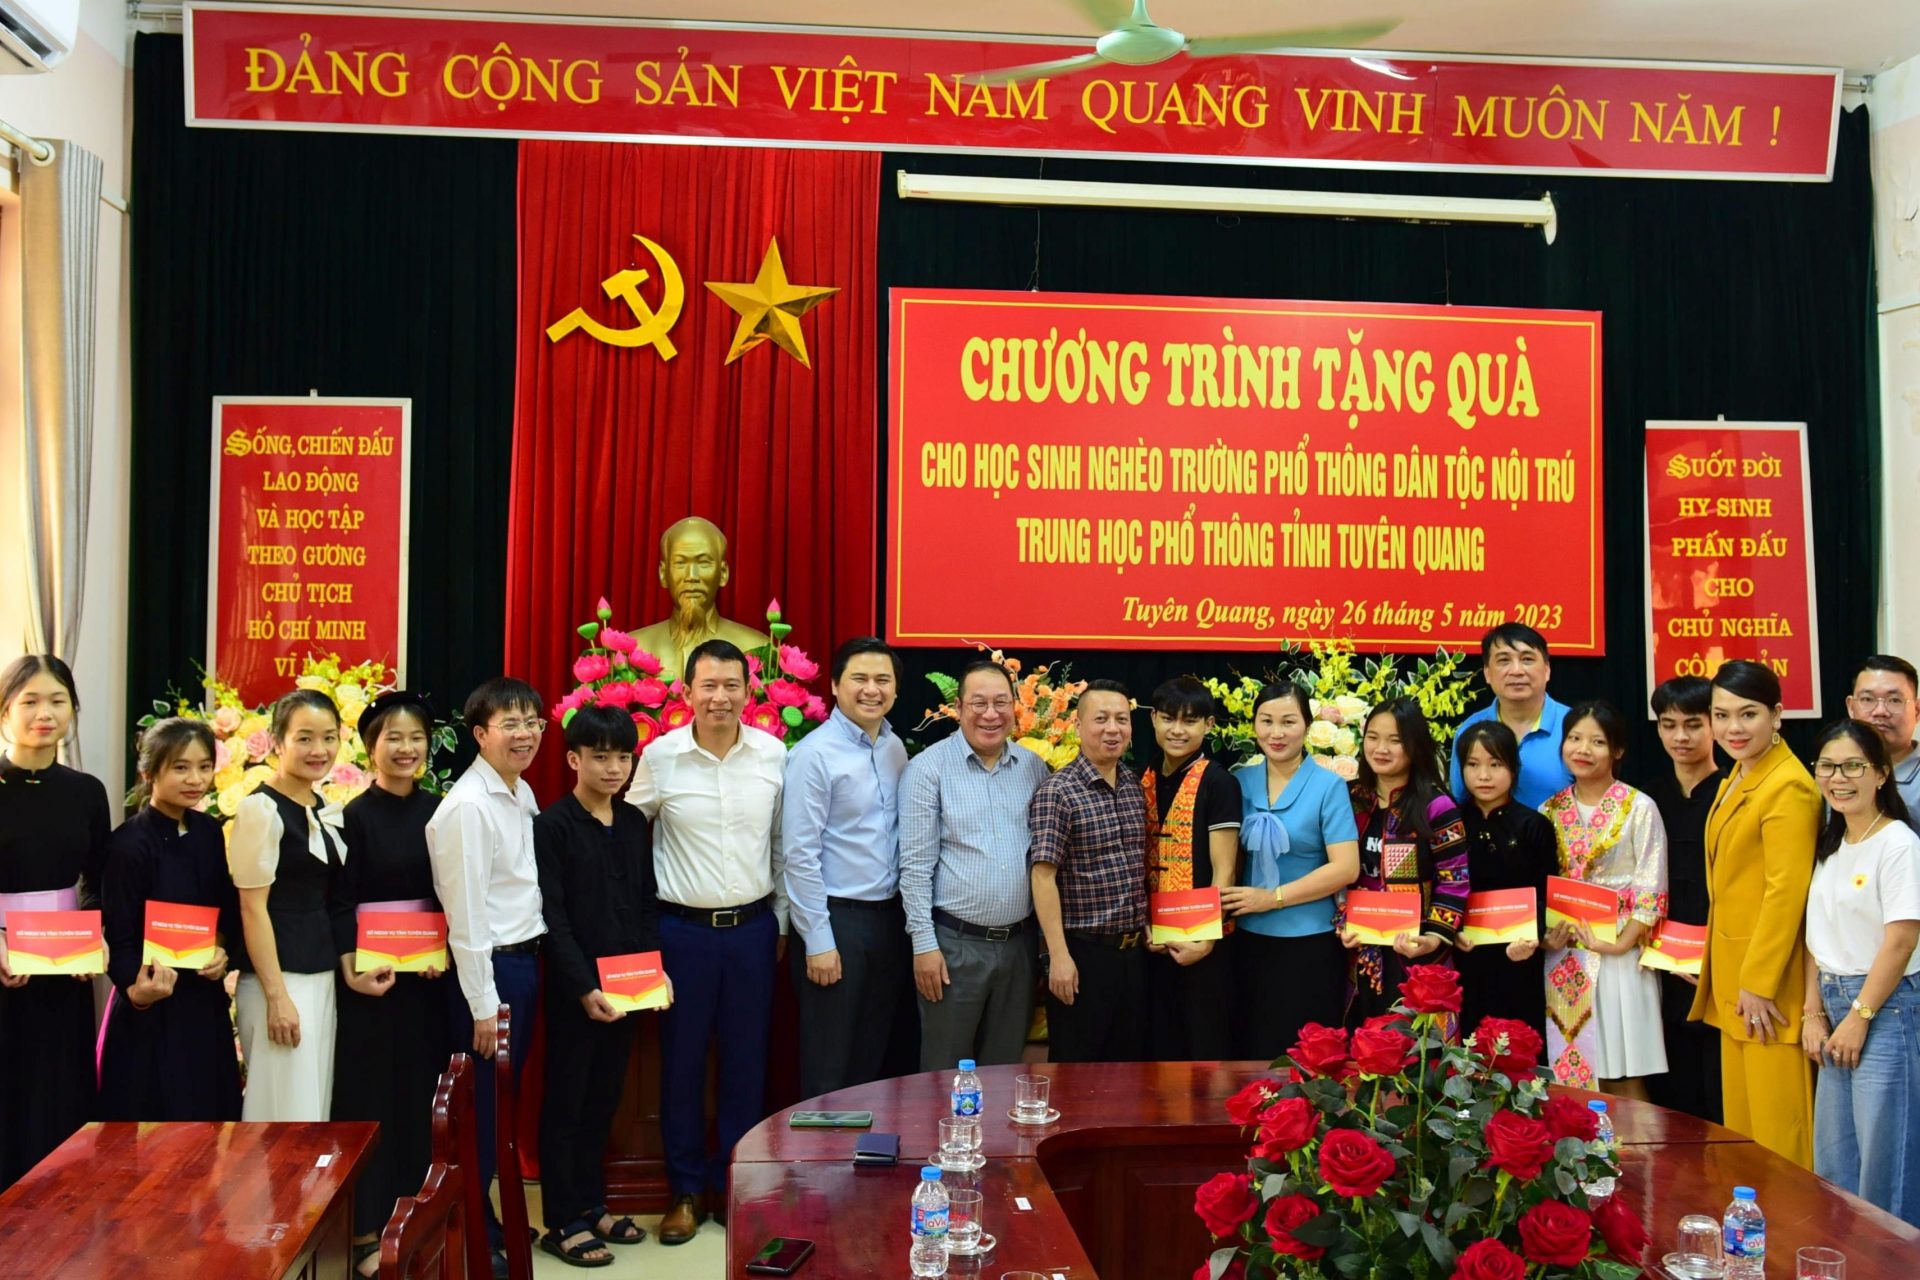 Trao tặng quà cho học sinh nghèo của Trường THPT Dân tộc Nội trú tỉnh Tuyên Quang năm học 2022-2023